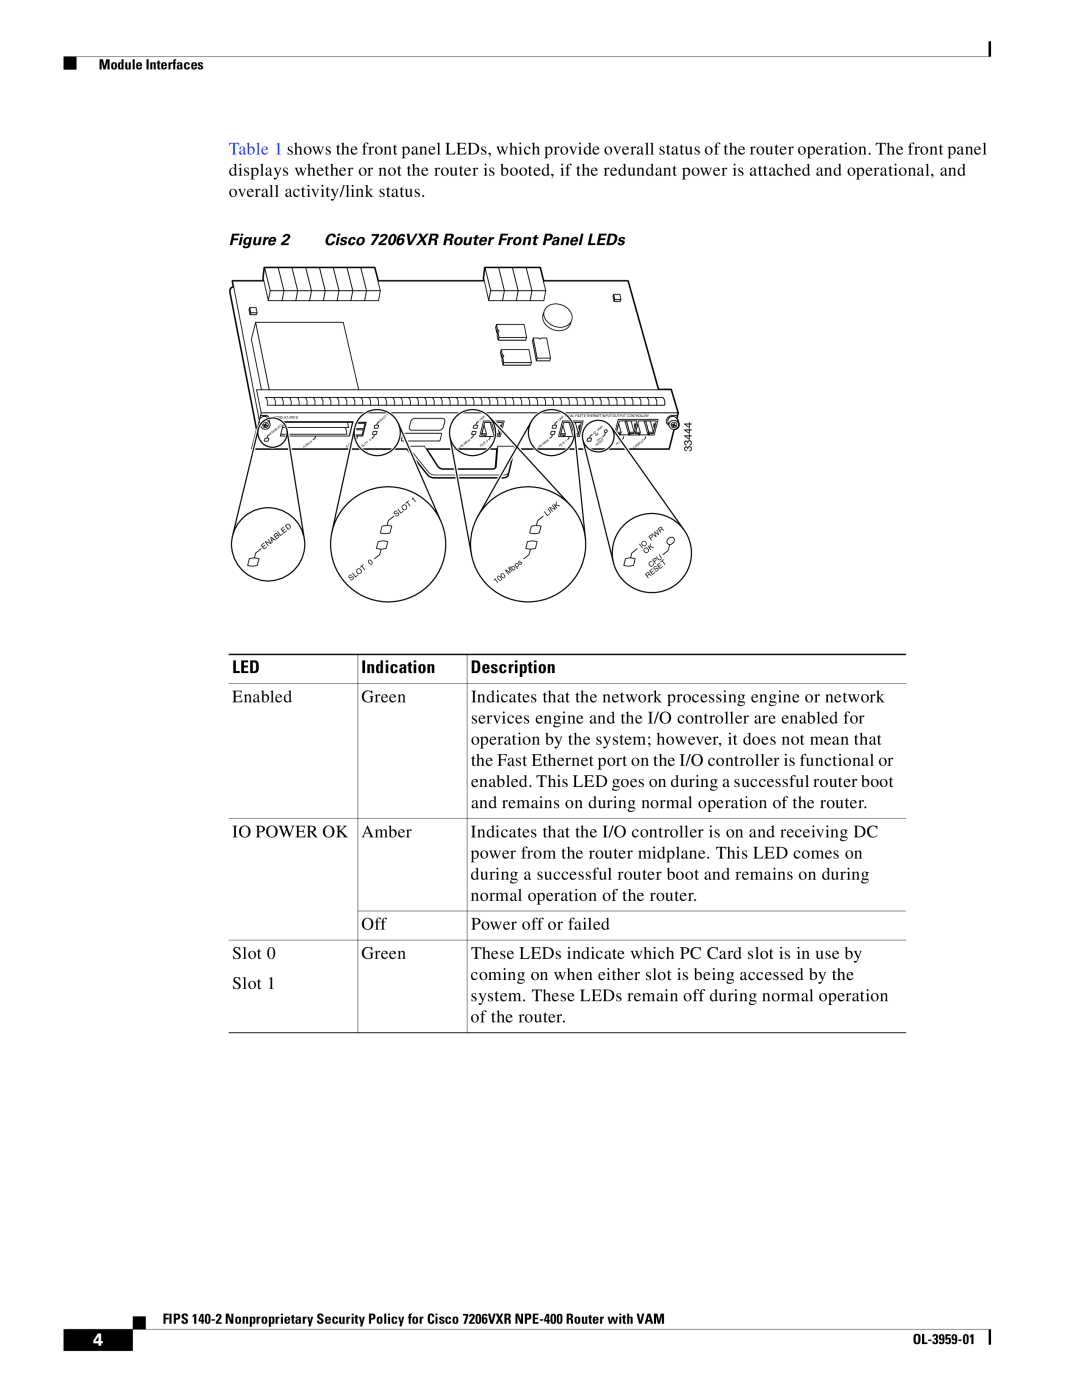 Cisco Systems 7206VXR NPE-400 manual Indication, Description, Cisco 7206VXR Router Front Panel LEDs 